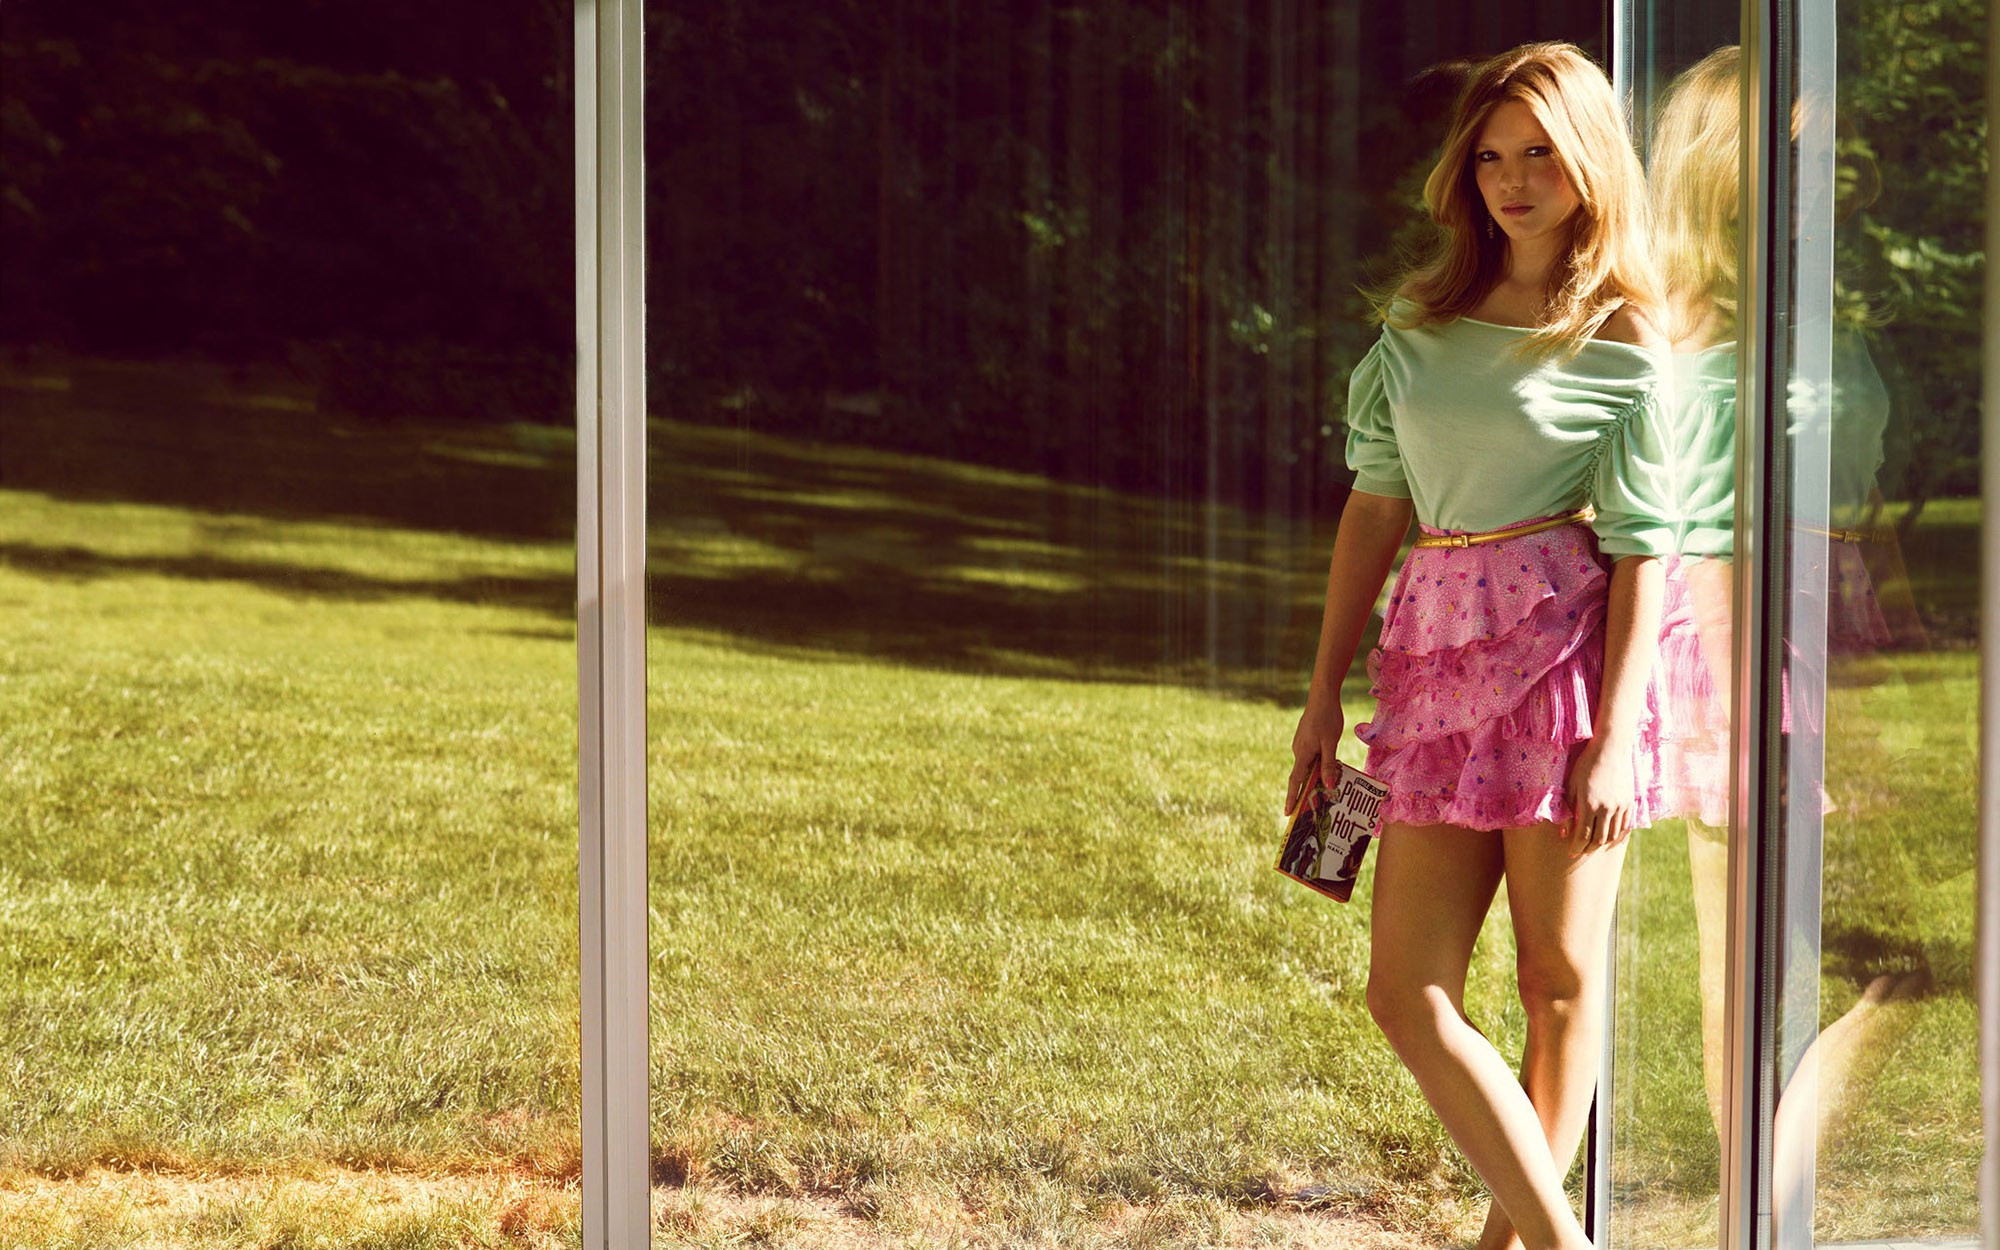 Lea Seydoux Women Actress Blonde Long Hair Pink Skirt Green Top Women Outdoors 2000x1250